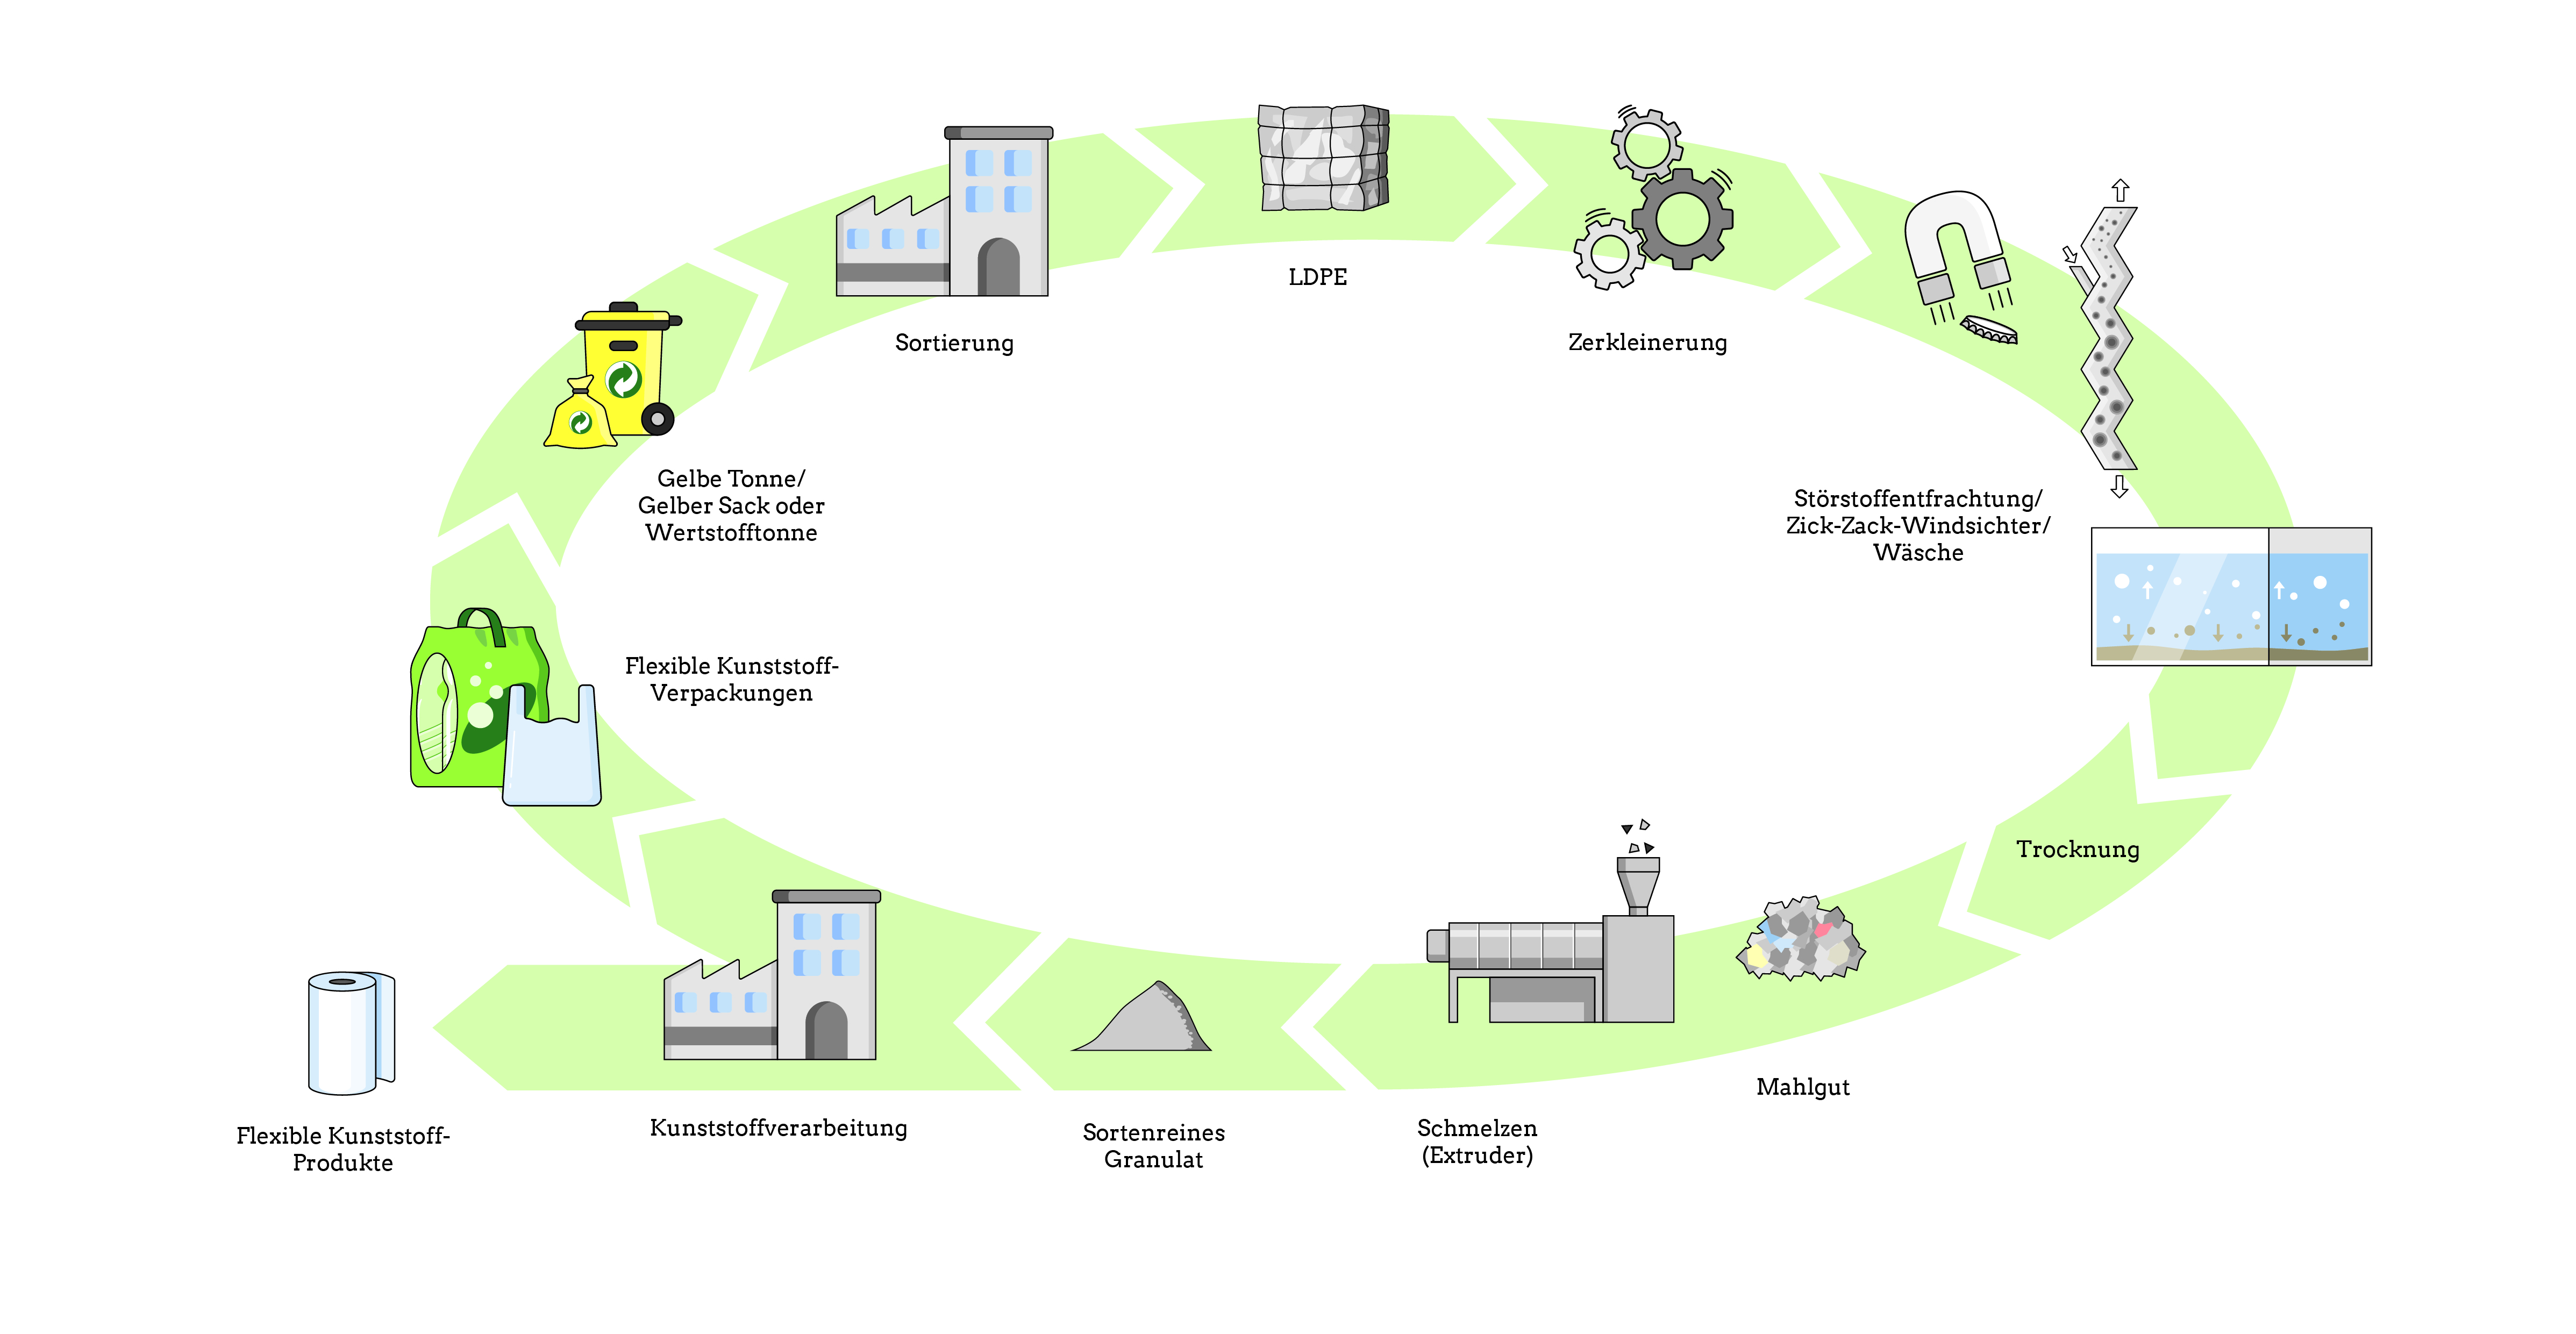 Wertstoffkreislauf - Mechanisches Recycling LDPE